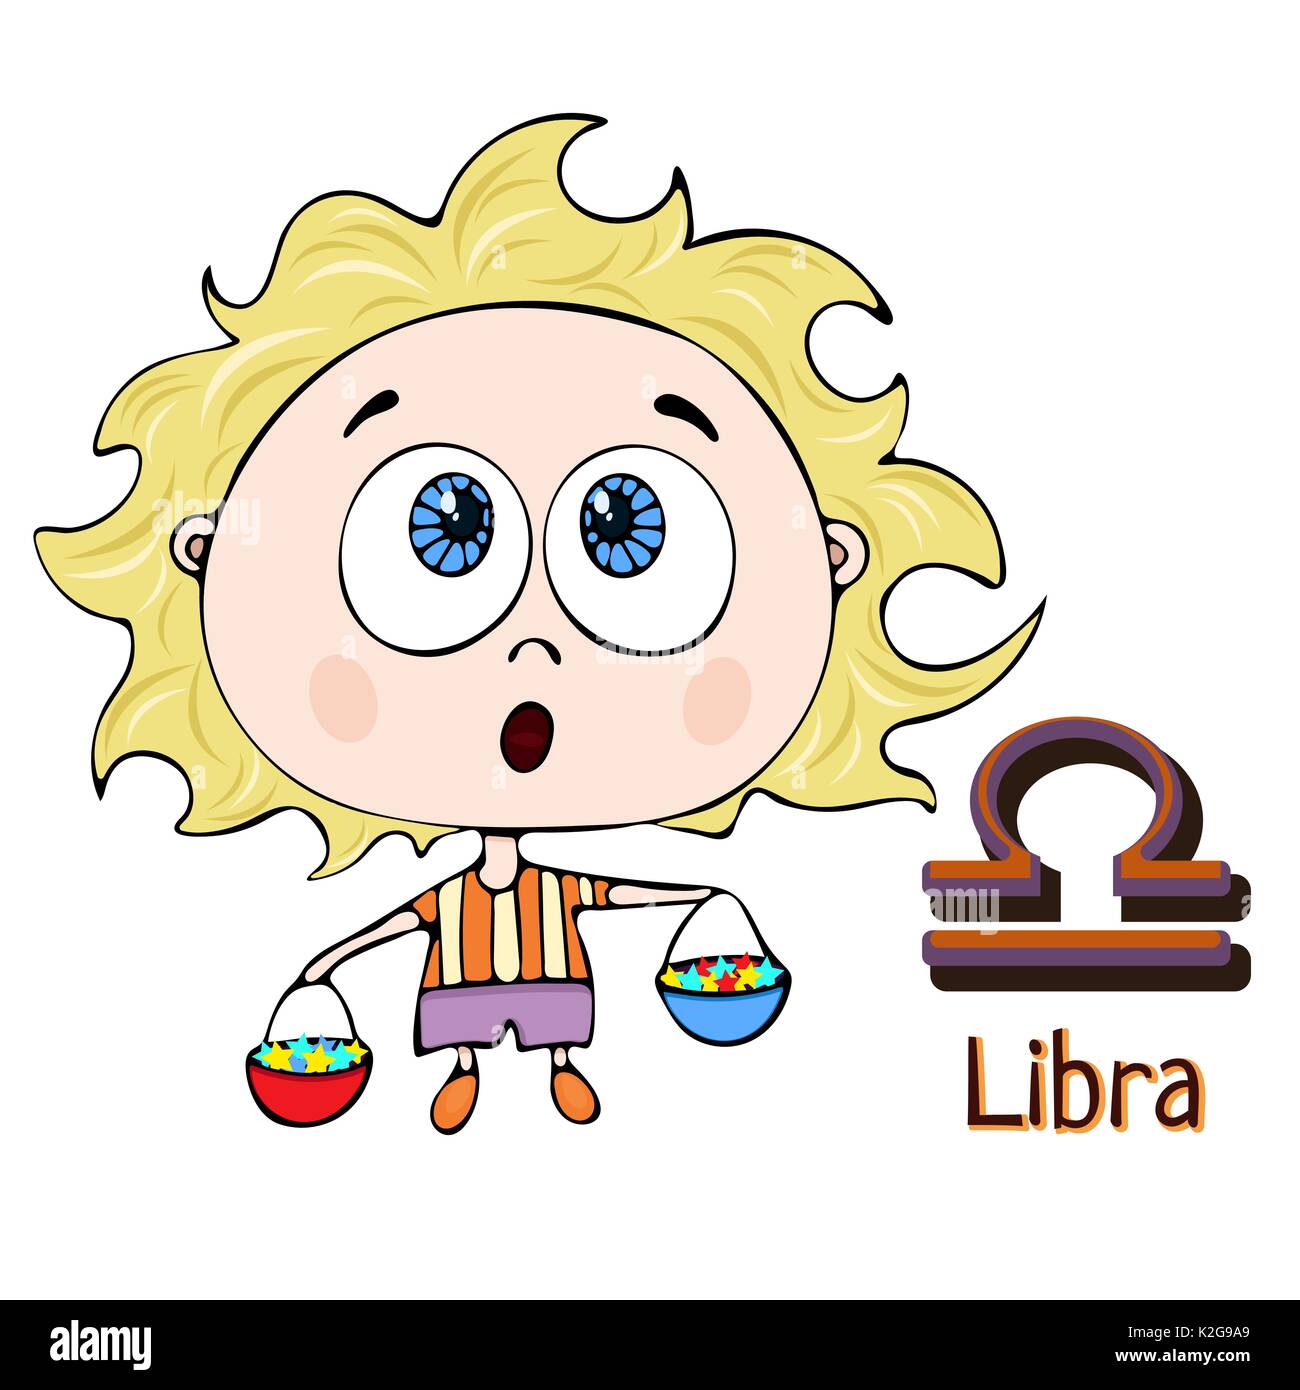 Segno zodiacale cartoon Libra, carattere astrologico. Dipinto funny libra con un simbolo isolato su sfondo bianco, il vettore del disegno a mano Illustrazione Vettoriale